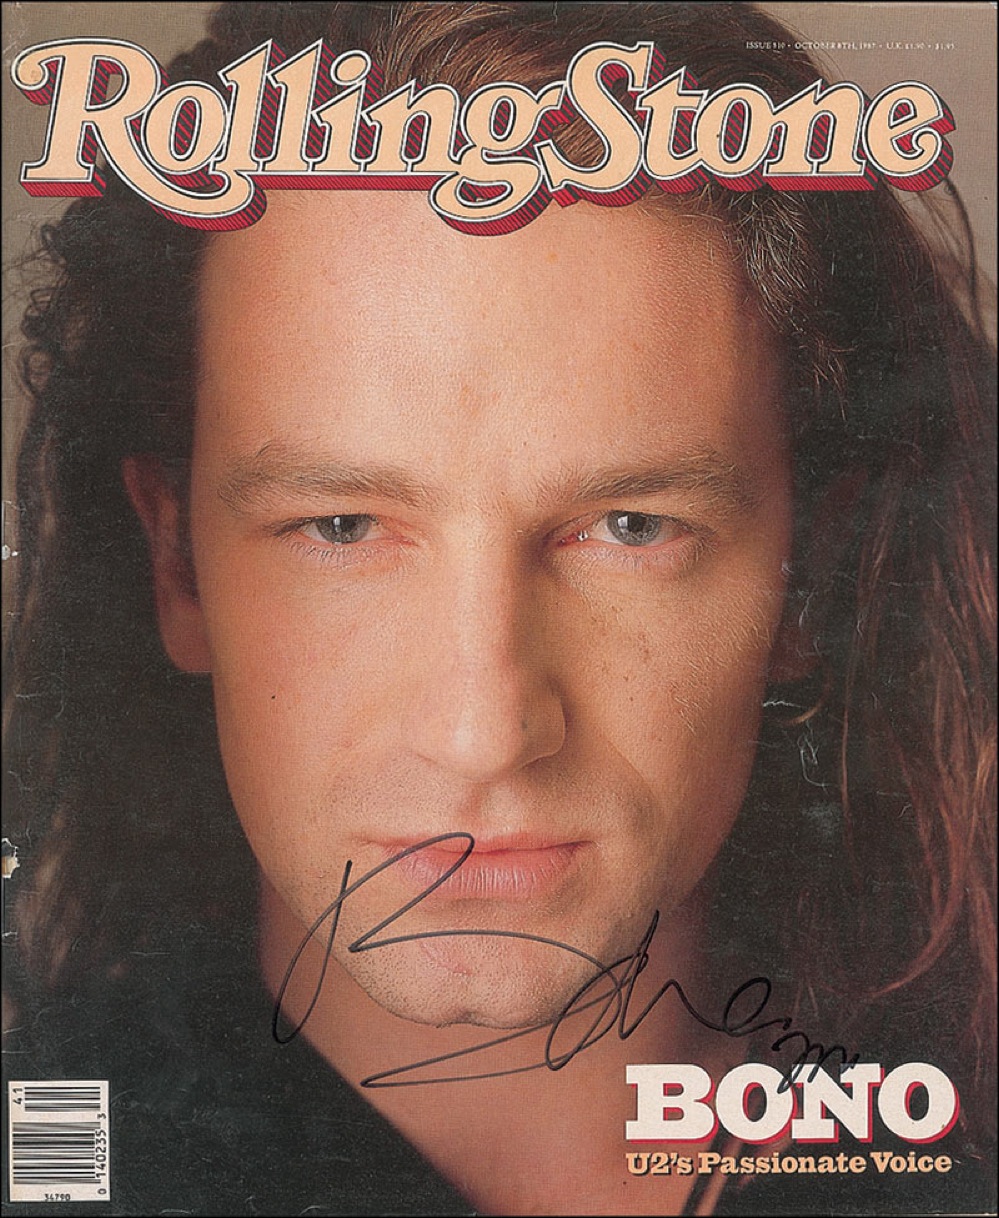 Lot #999 U2: Bono